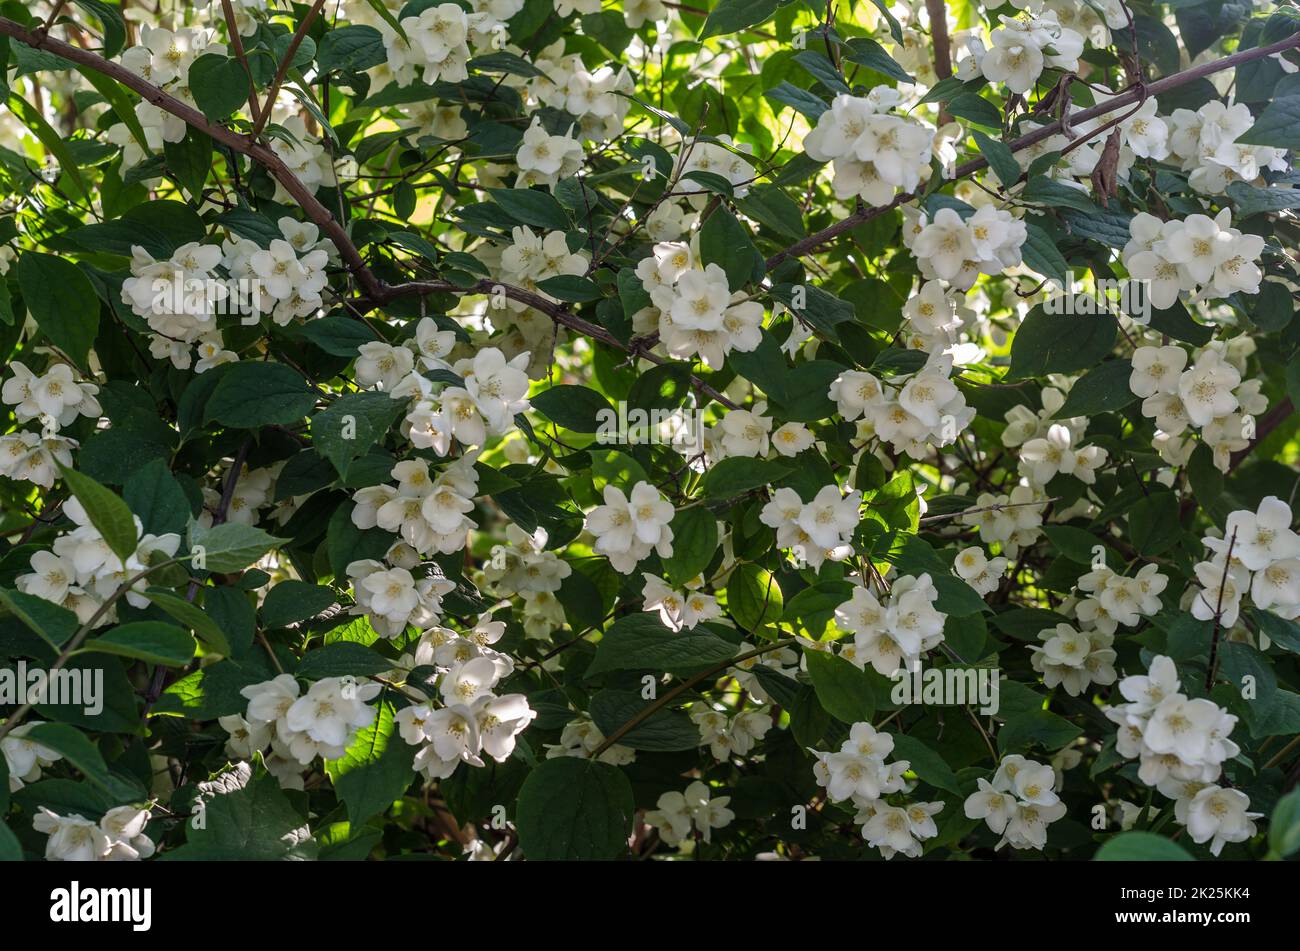 Fragrant white flowers in blossom, summer landscape Stock Photo